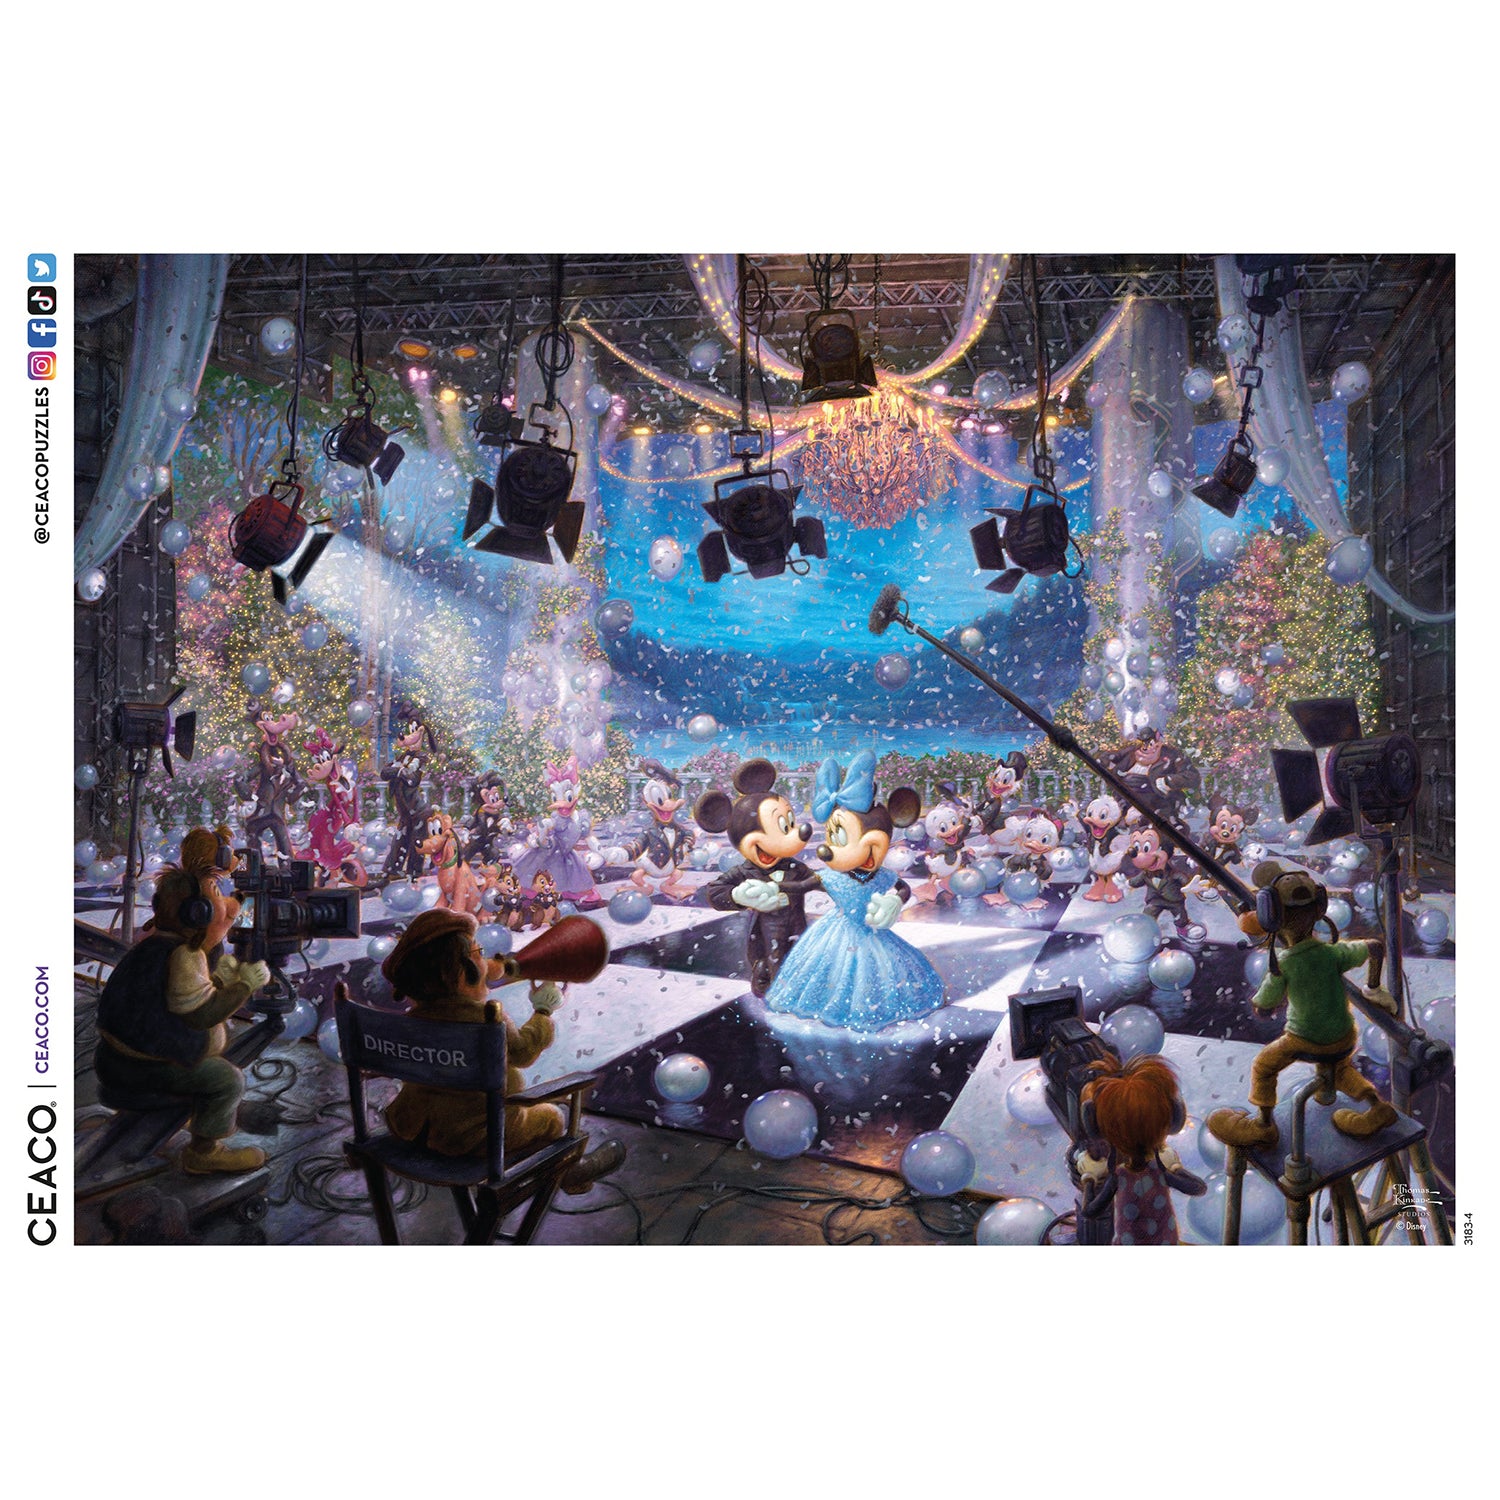 Ceaco Thomas Kinkade Disney - Disney 100th Celebration 1000 Piece Puzzle